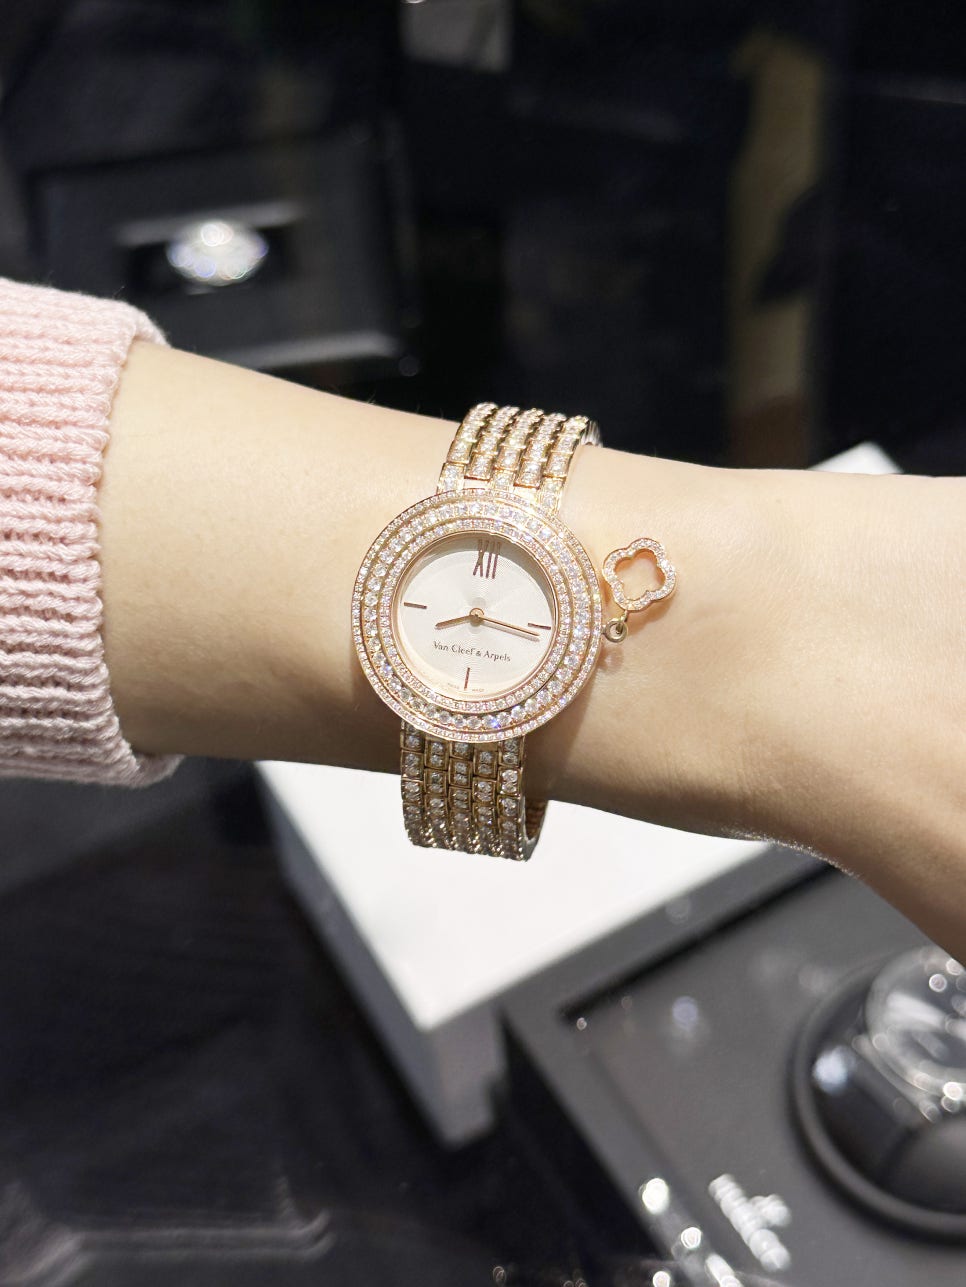 여성명품시계 까르띠에 시계 팔찌 반지까지 할인쇼핑